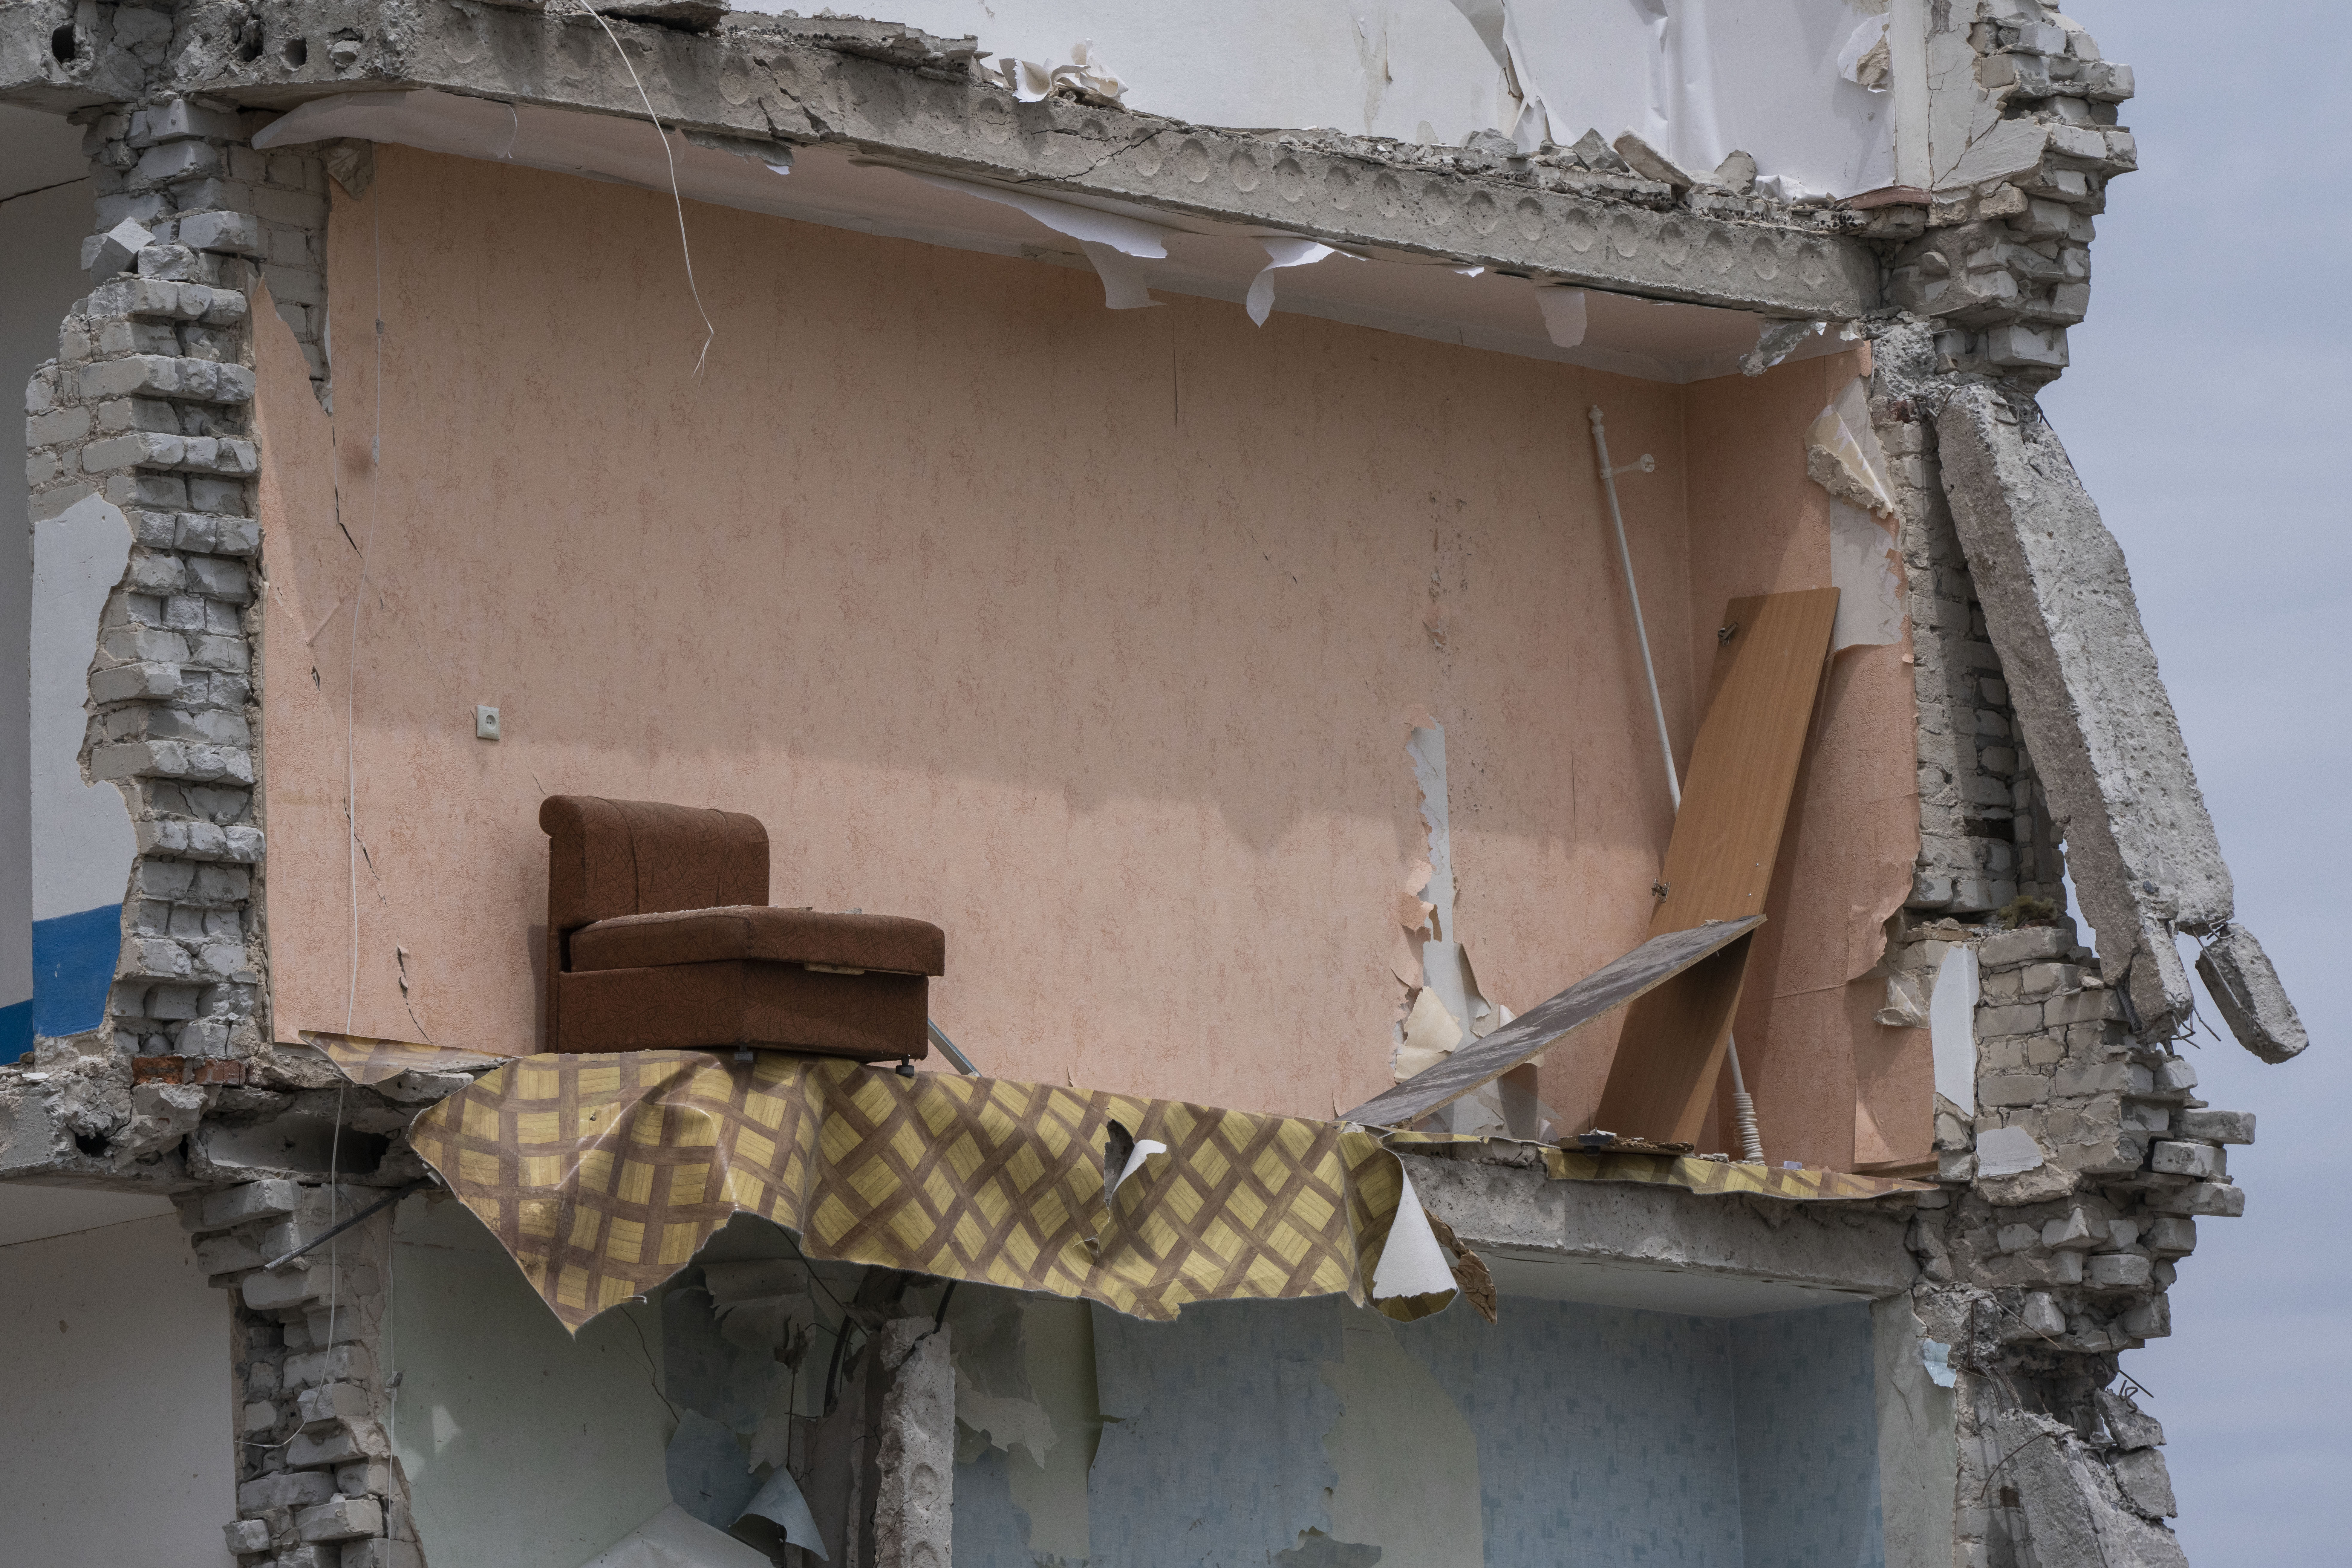 Разрушенный ударом жилой дом. Часовой Яр, Донецкая область. 10 июля 2022 года. Фото AP/Nariman El-Mofty/Scanpix/LETA